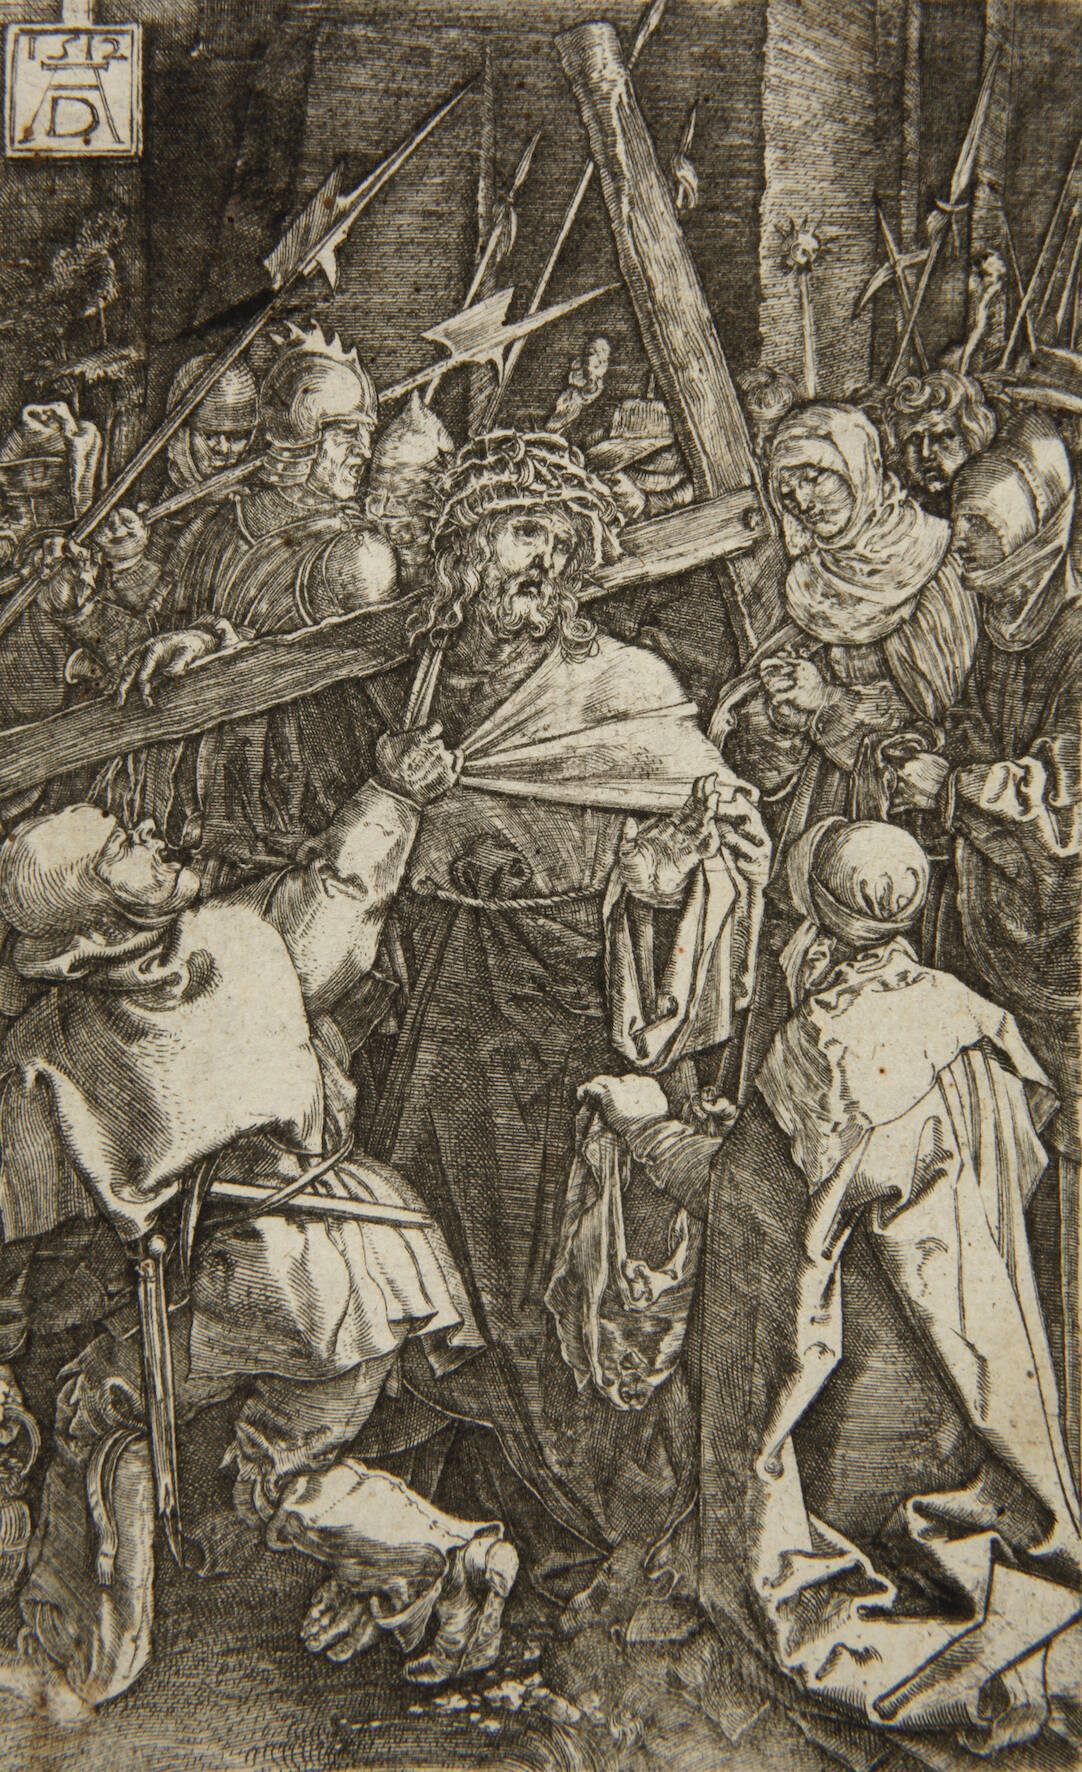 Albrecht Dürer, "Die Kreuztragung"